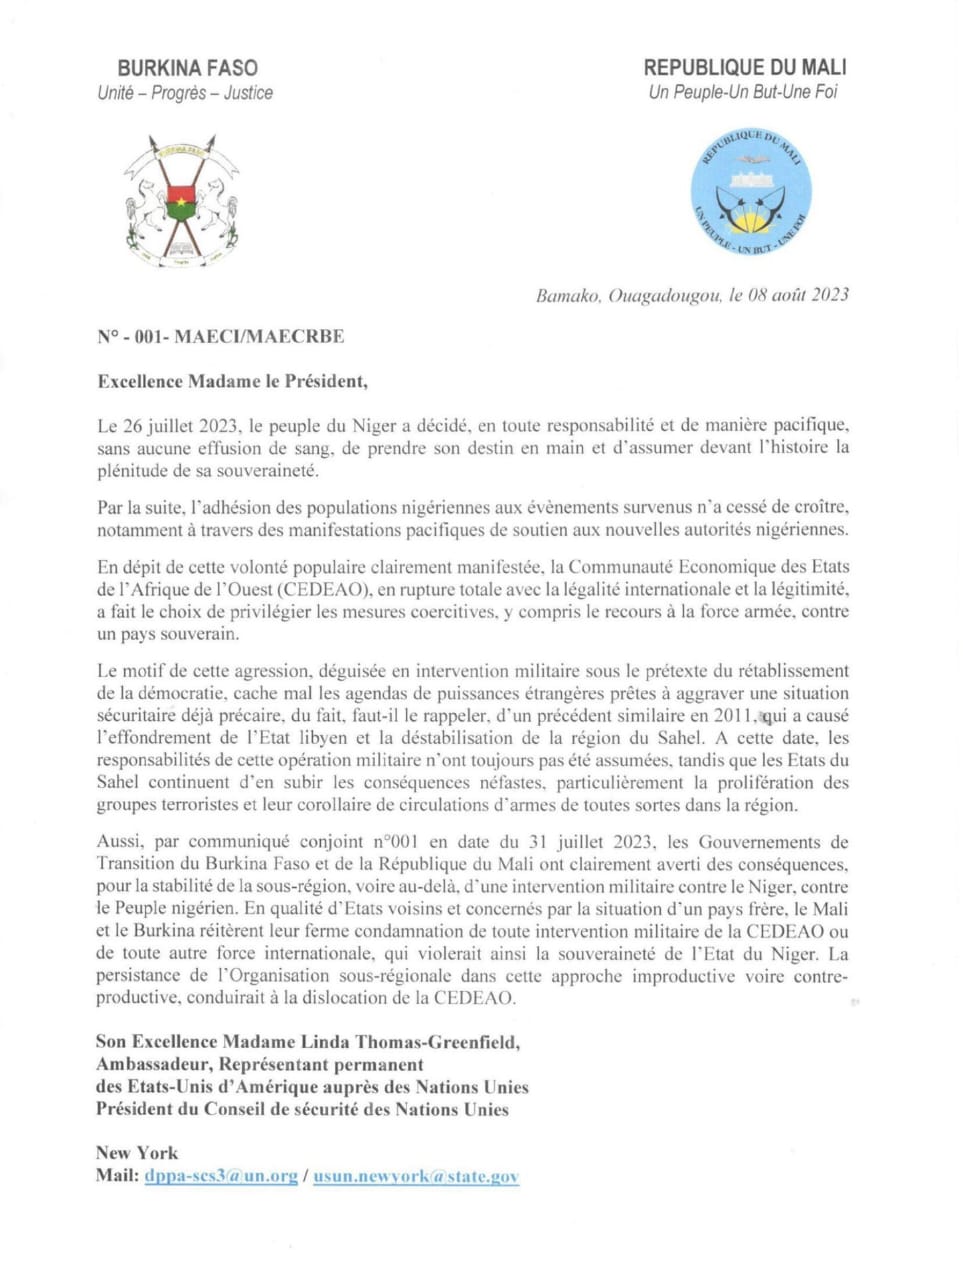 Éventuelle intervention militaire au Niger: les gouvernements du Mali et du Burkina en appellent à la responsabilité du Conseil de Sécurité et du Conseil de Paix et de Sécurité...